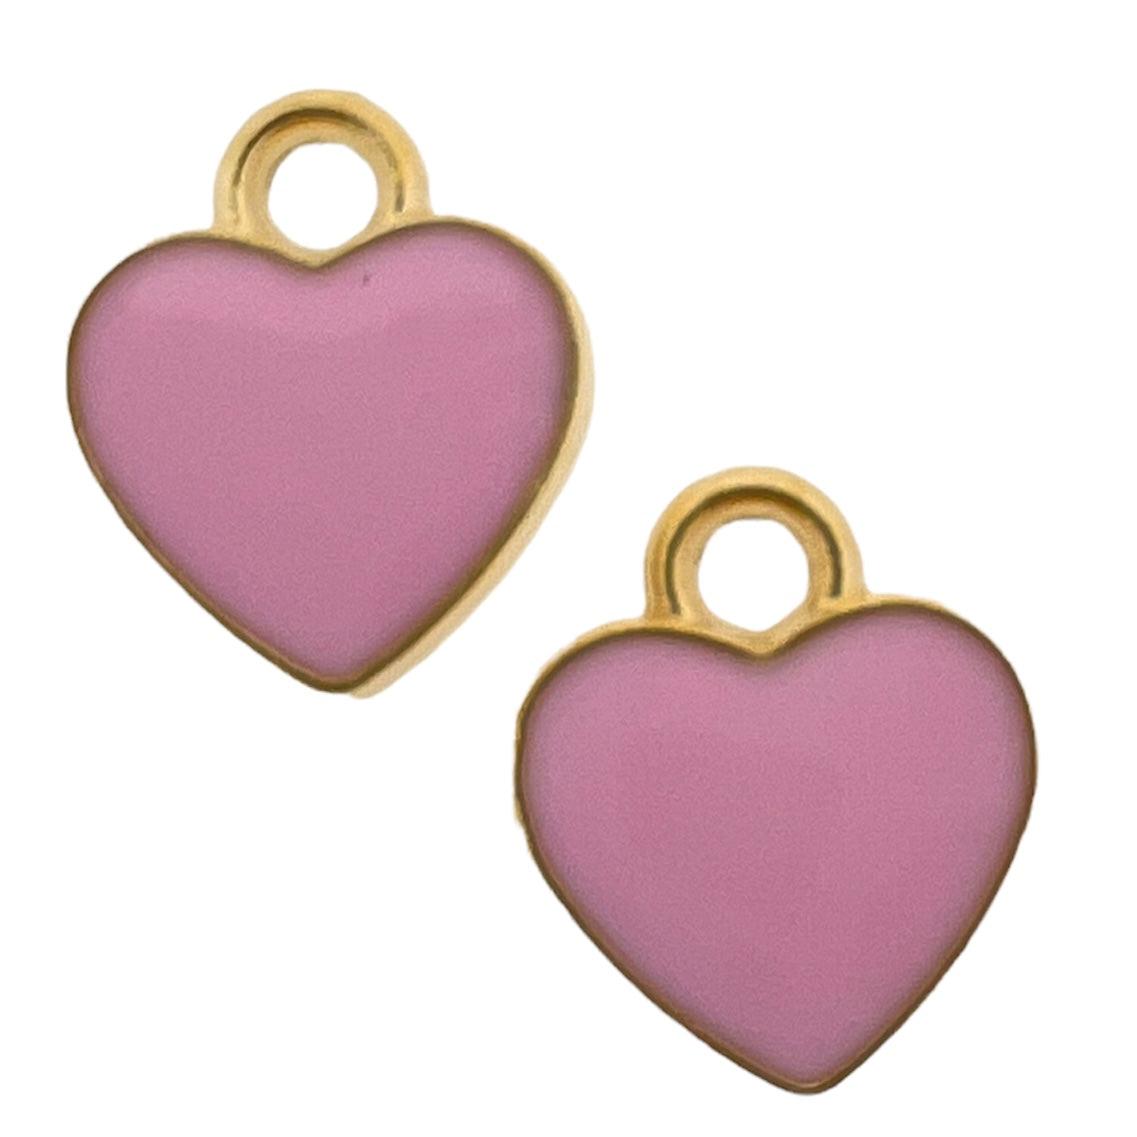 Bedel emaille hartje roze goud 12x10mm-bedels-Kraaltjes van Renate